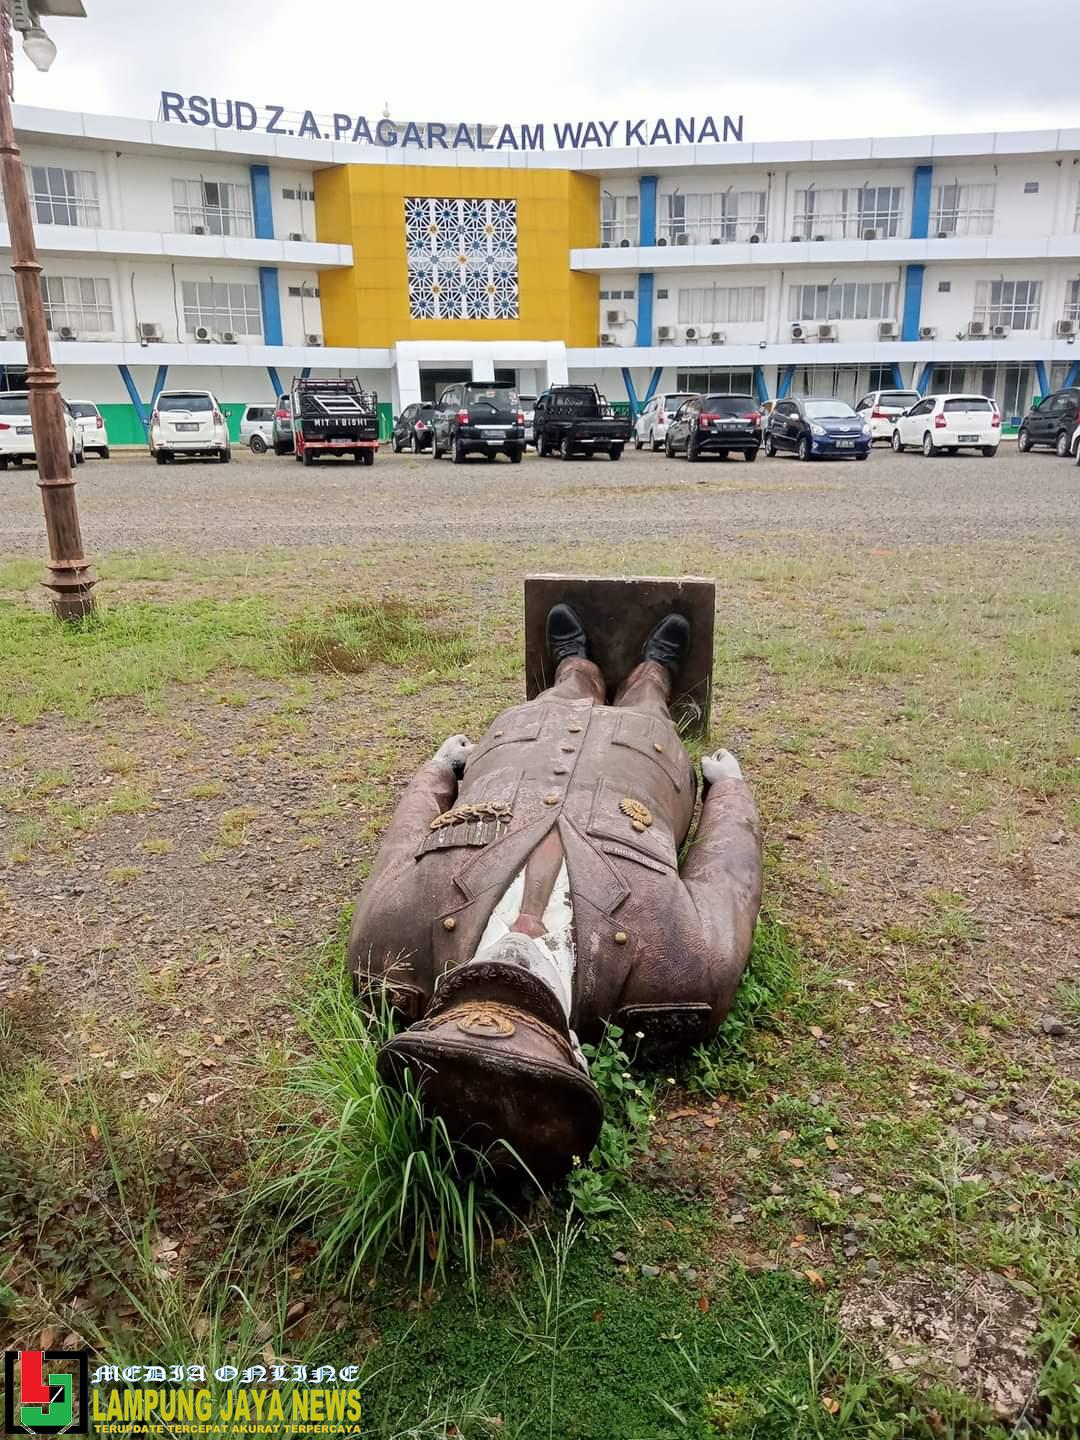 Patung Zainal Abidin Pagar Alam Bukan Ditelantarkan, Tetapi Sedang Proses Pemindahan Bangunan